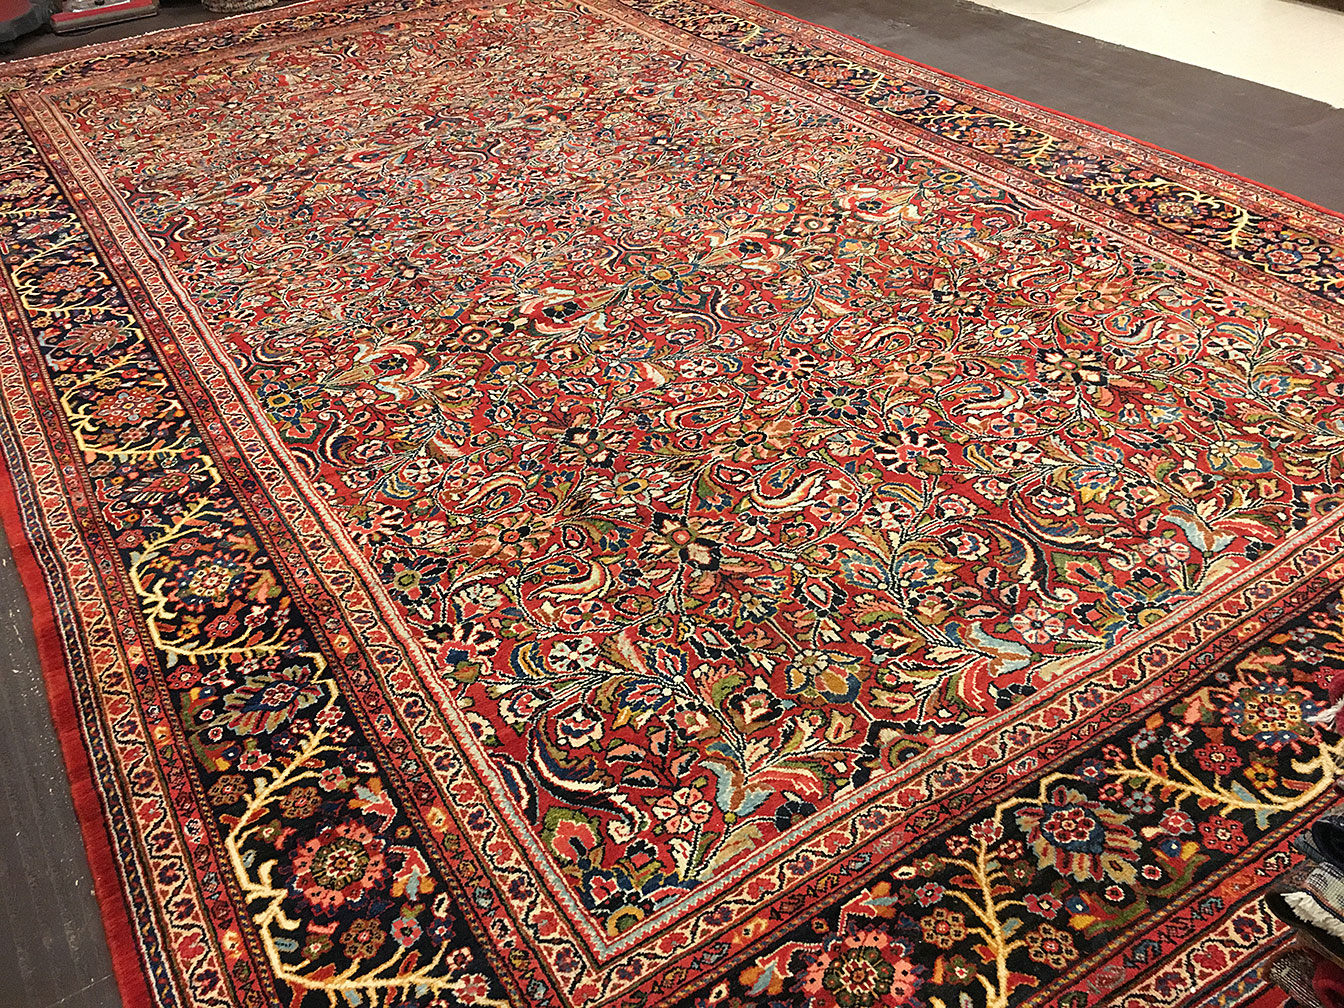 Antique mahal Carpet - # 52472